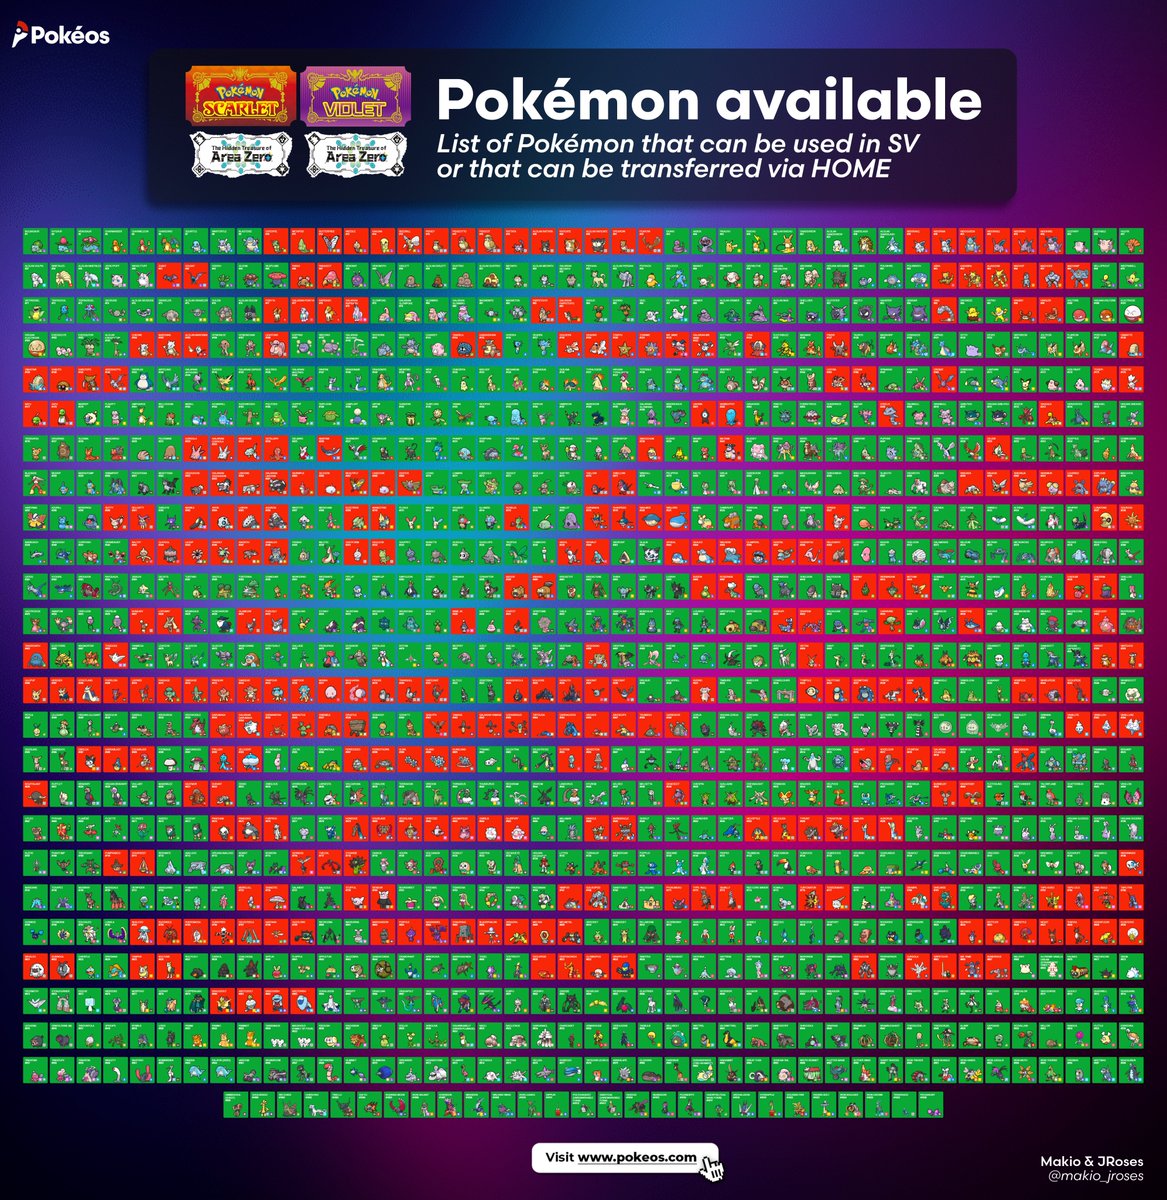 Track Your Pokémon Scarlet and Violet Dex on PokédexTracker!